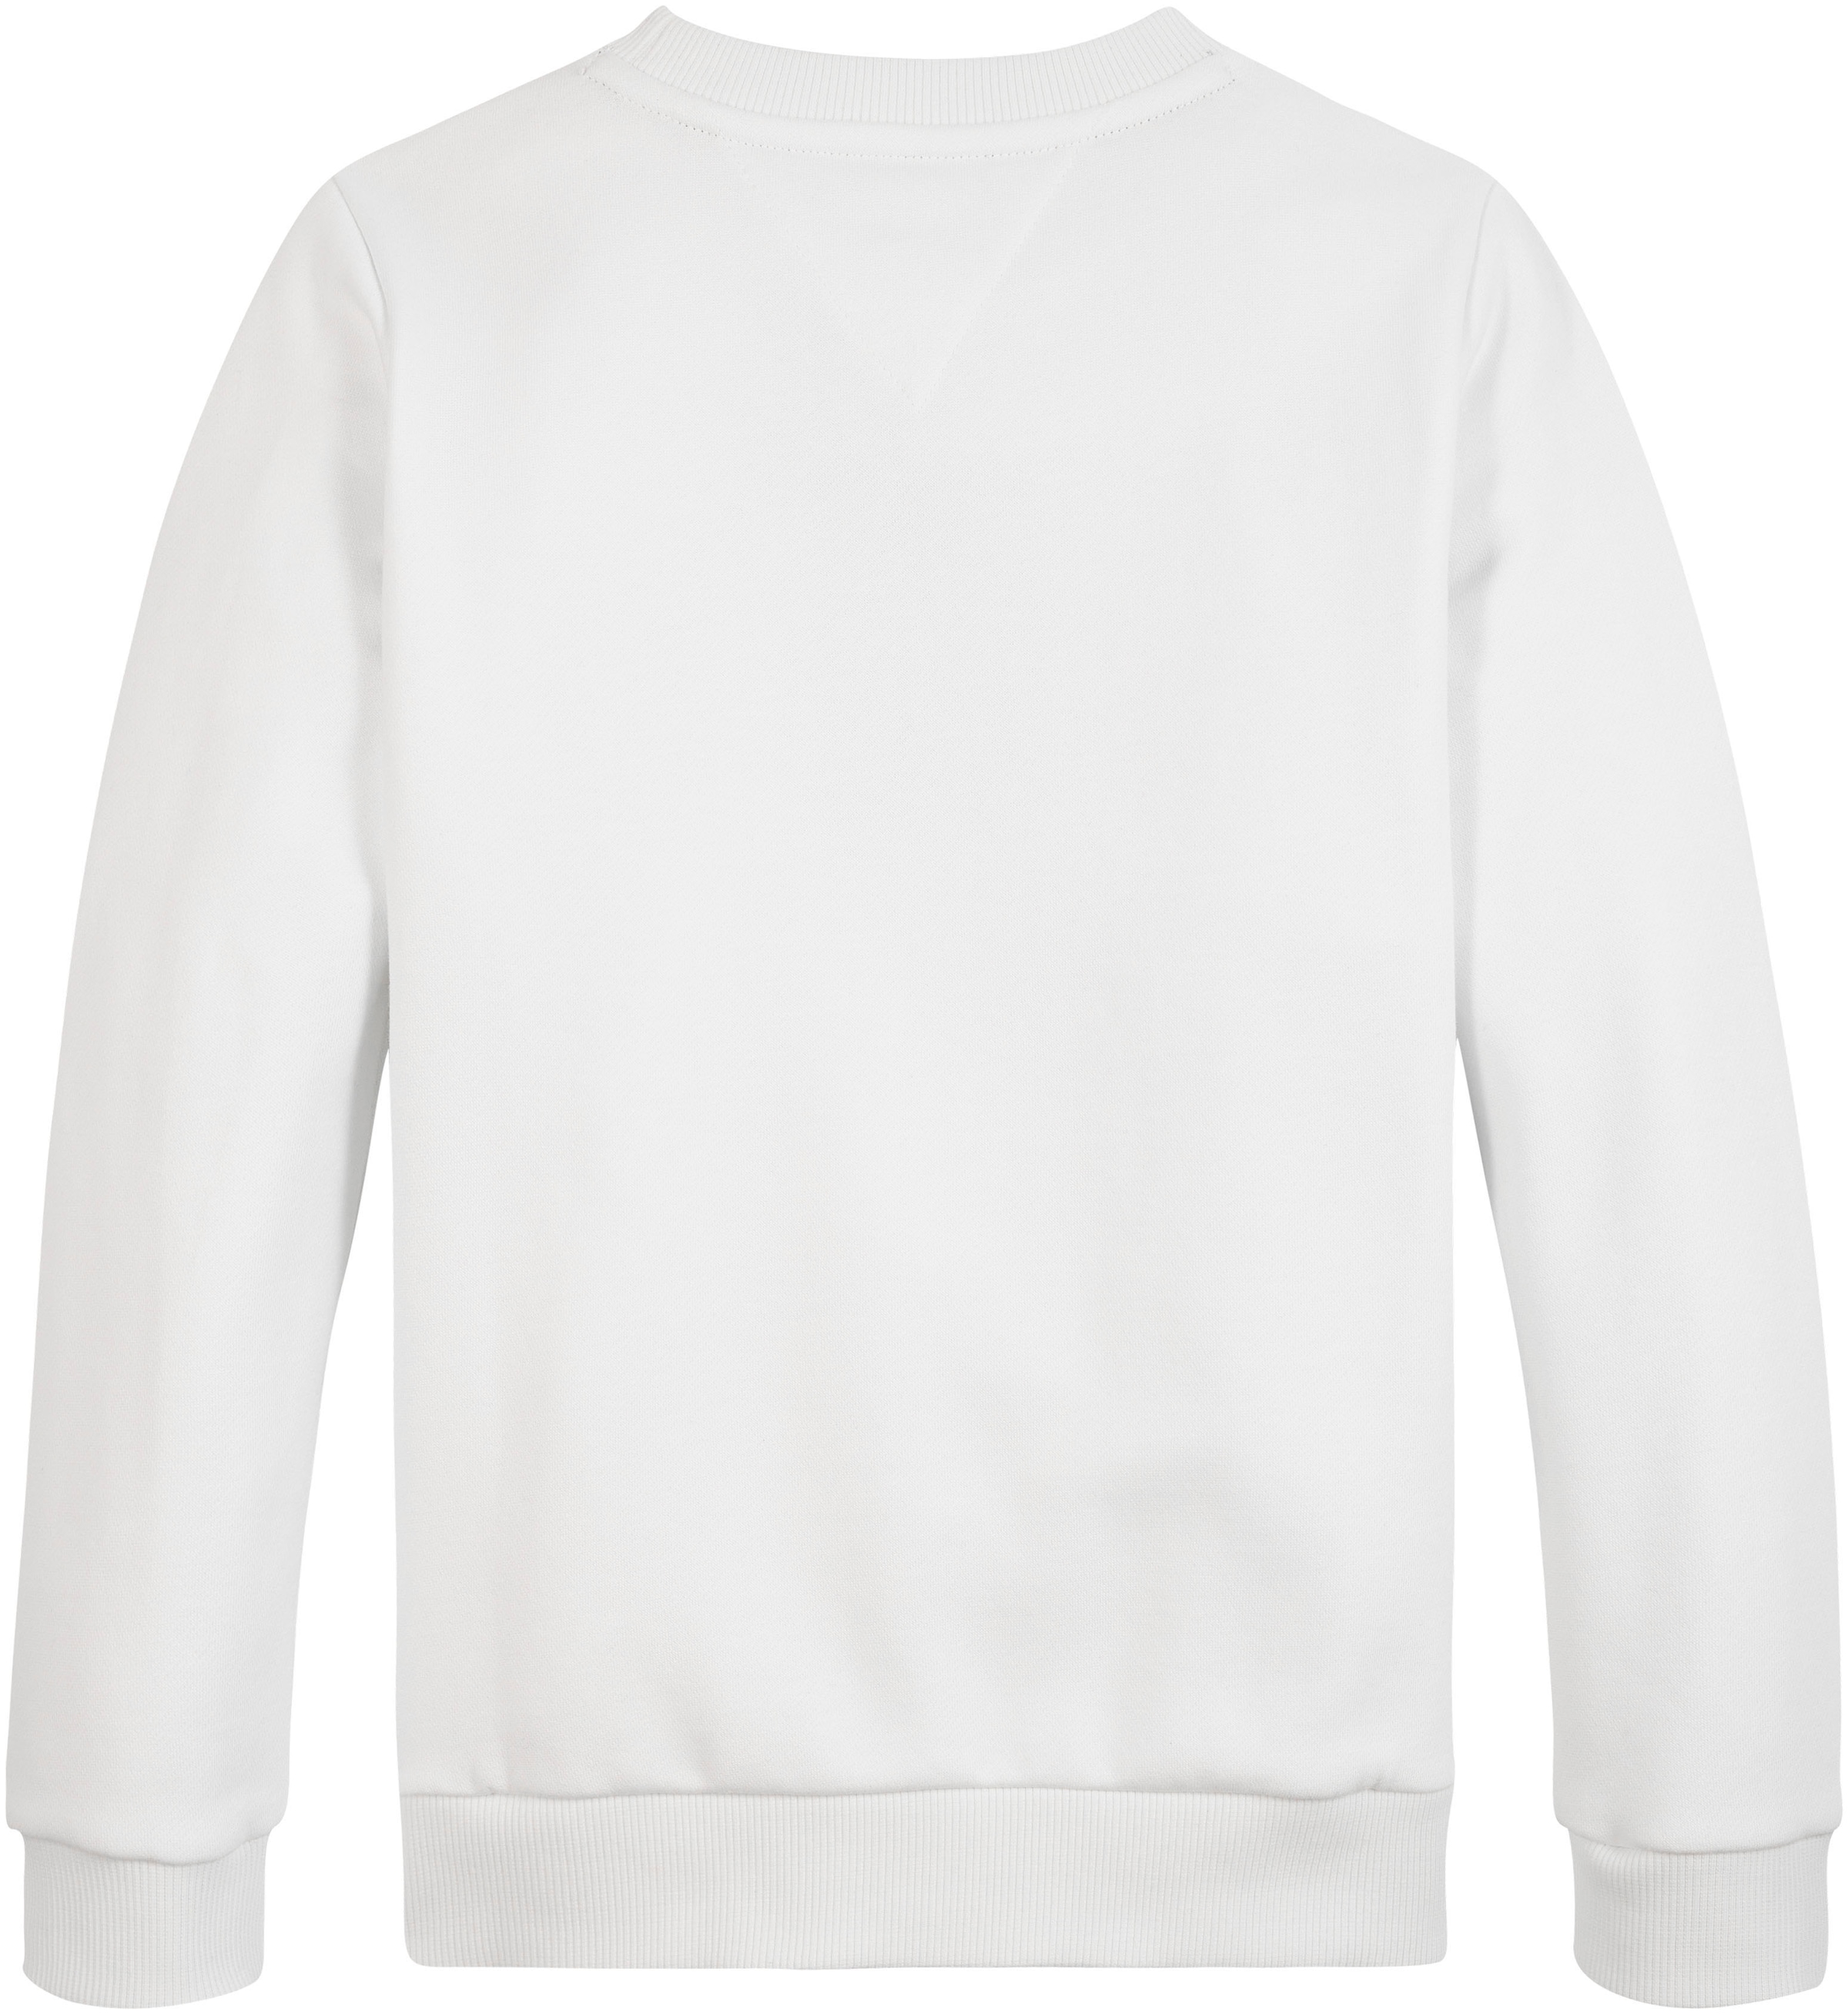 Tommy Hilfiger Sweatshirt »TH mit Hilfiger LOGO bei Flag & SWEATSHIRT«, ♕ großer Logo-Schriftzug